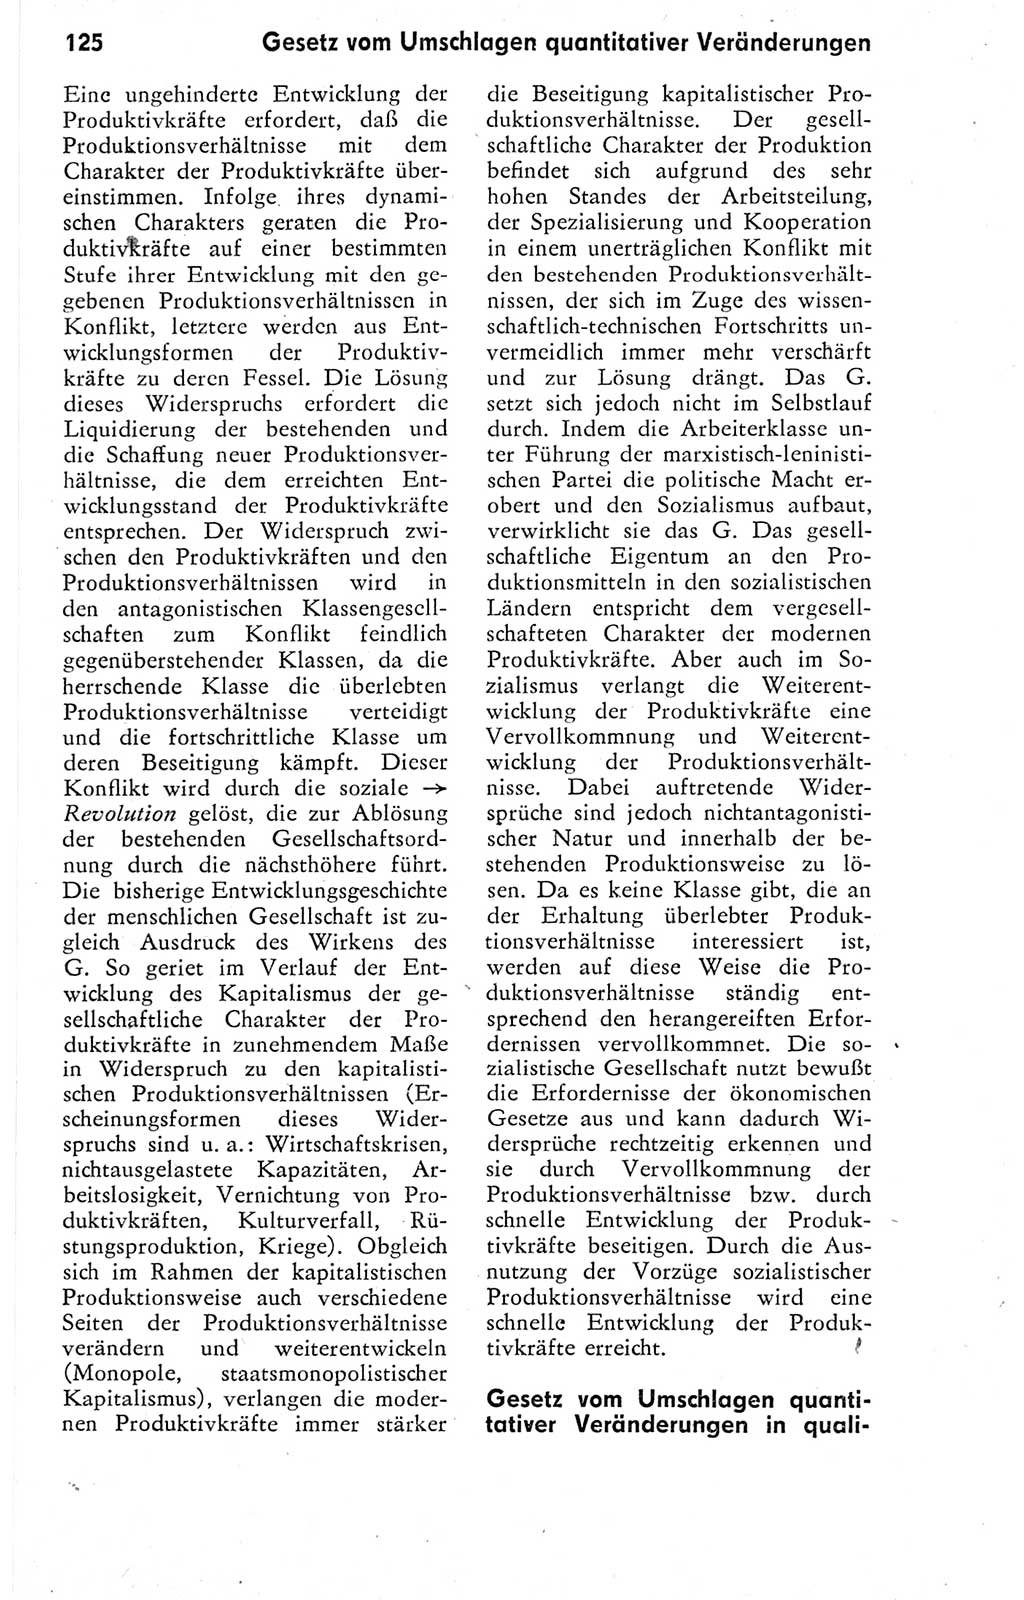 Kleines Wörterbuch der marxistisch-leninistischen Philosophie [Deutsche Demokratische Republik (DDR)] 1974, Seite 125 (Kl. Wb. ML Phil. DDR 1974, S. 125)